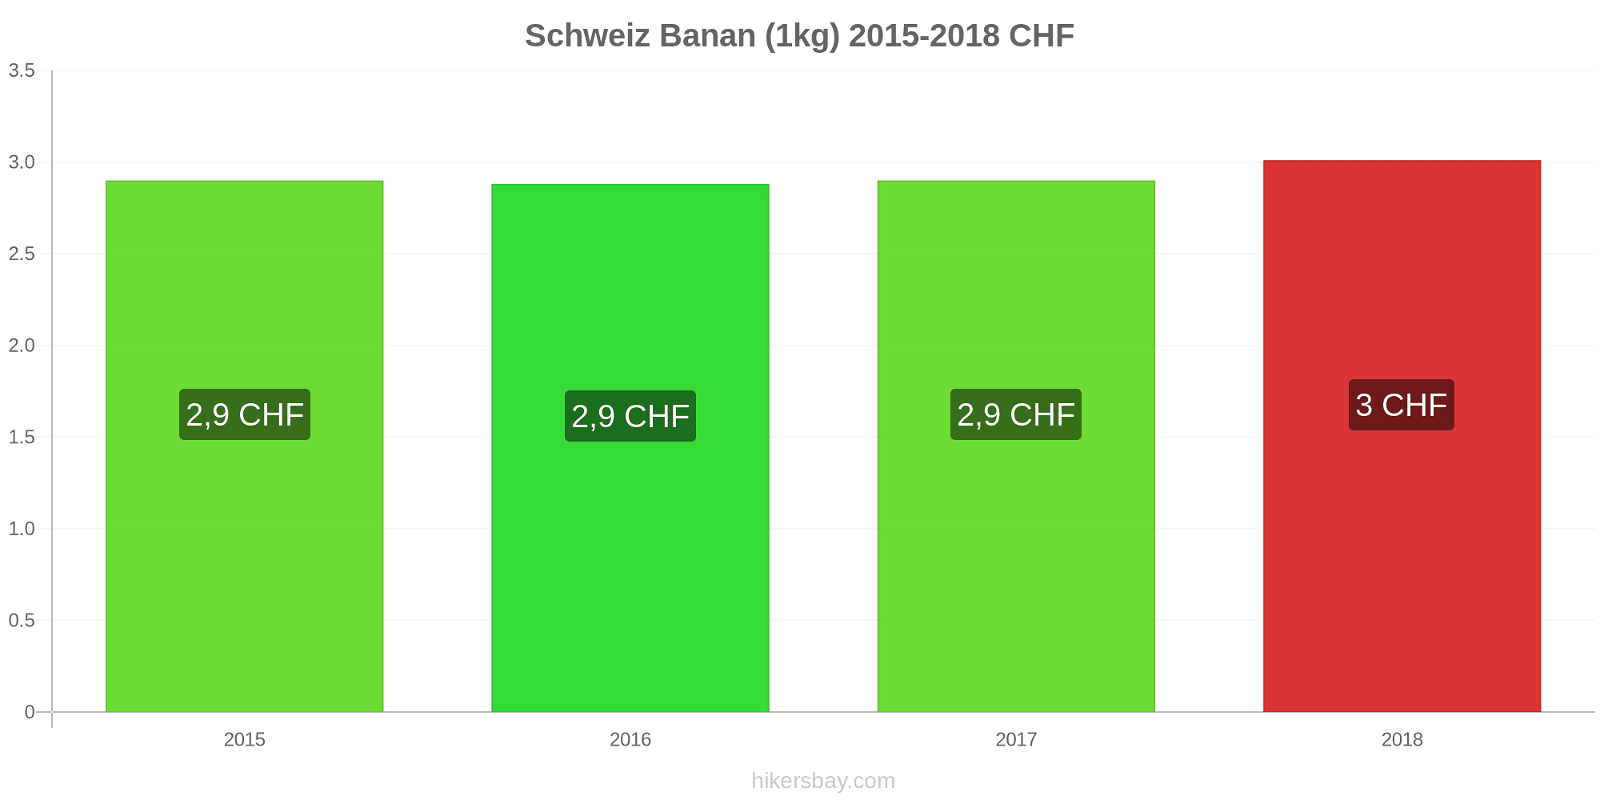 Schweiz prisændringer Bananer (1kg) hikersbay.com